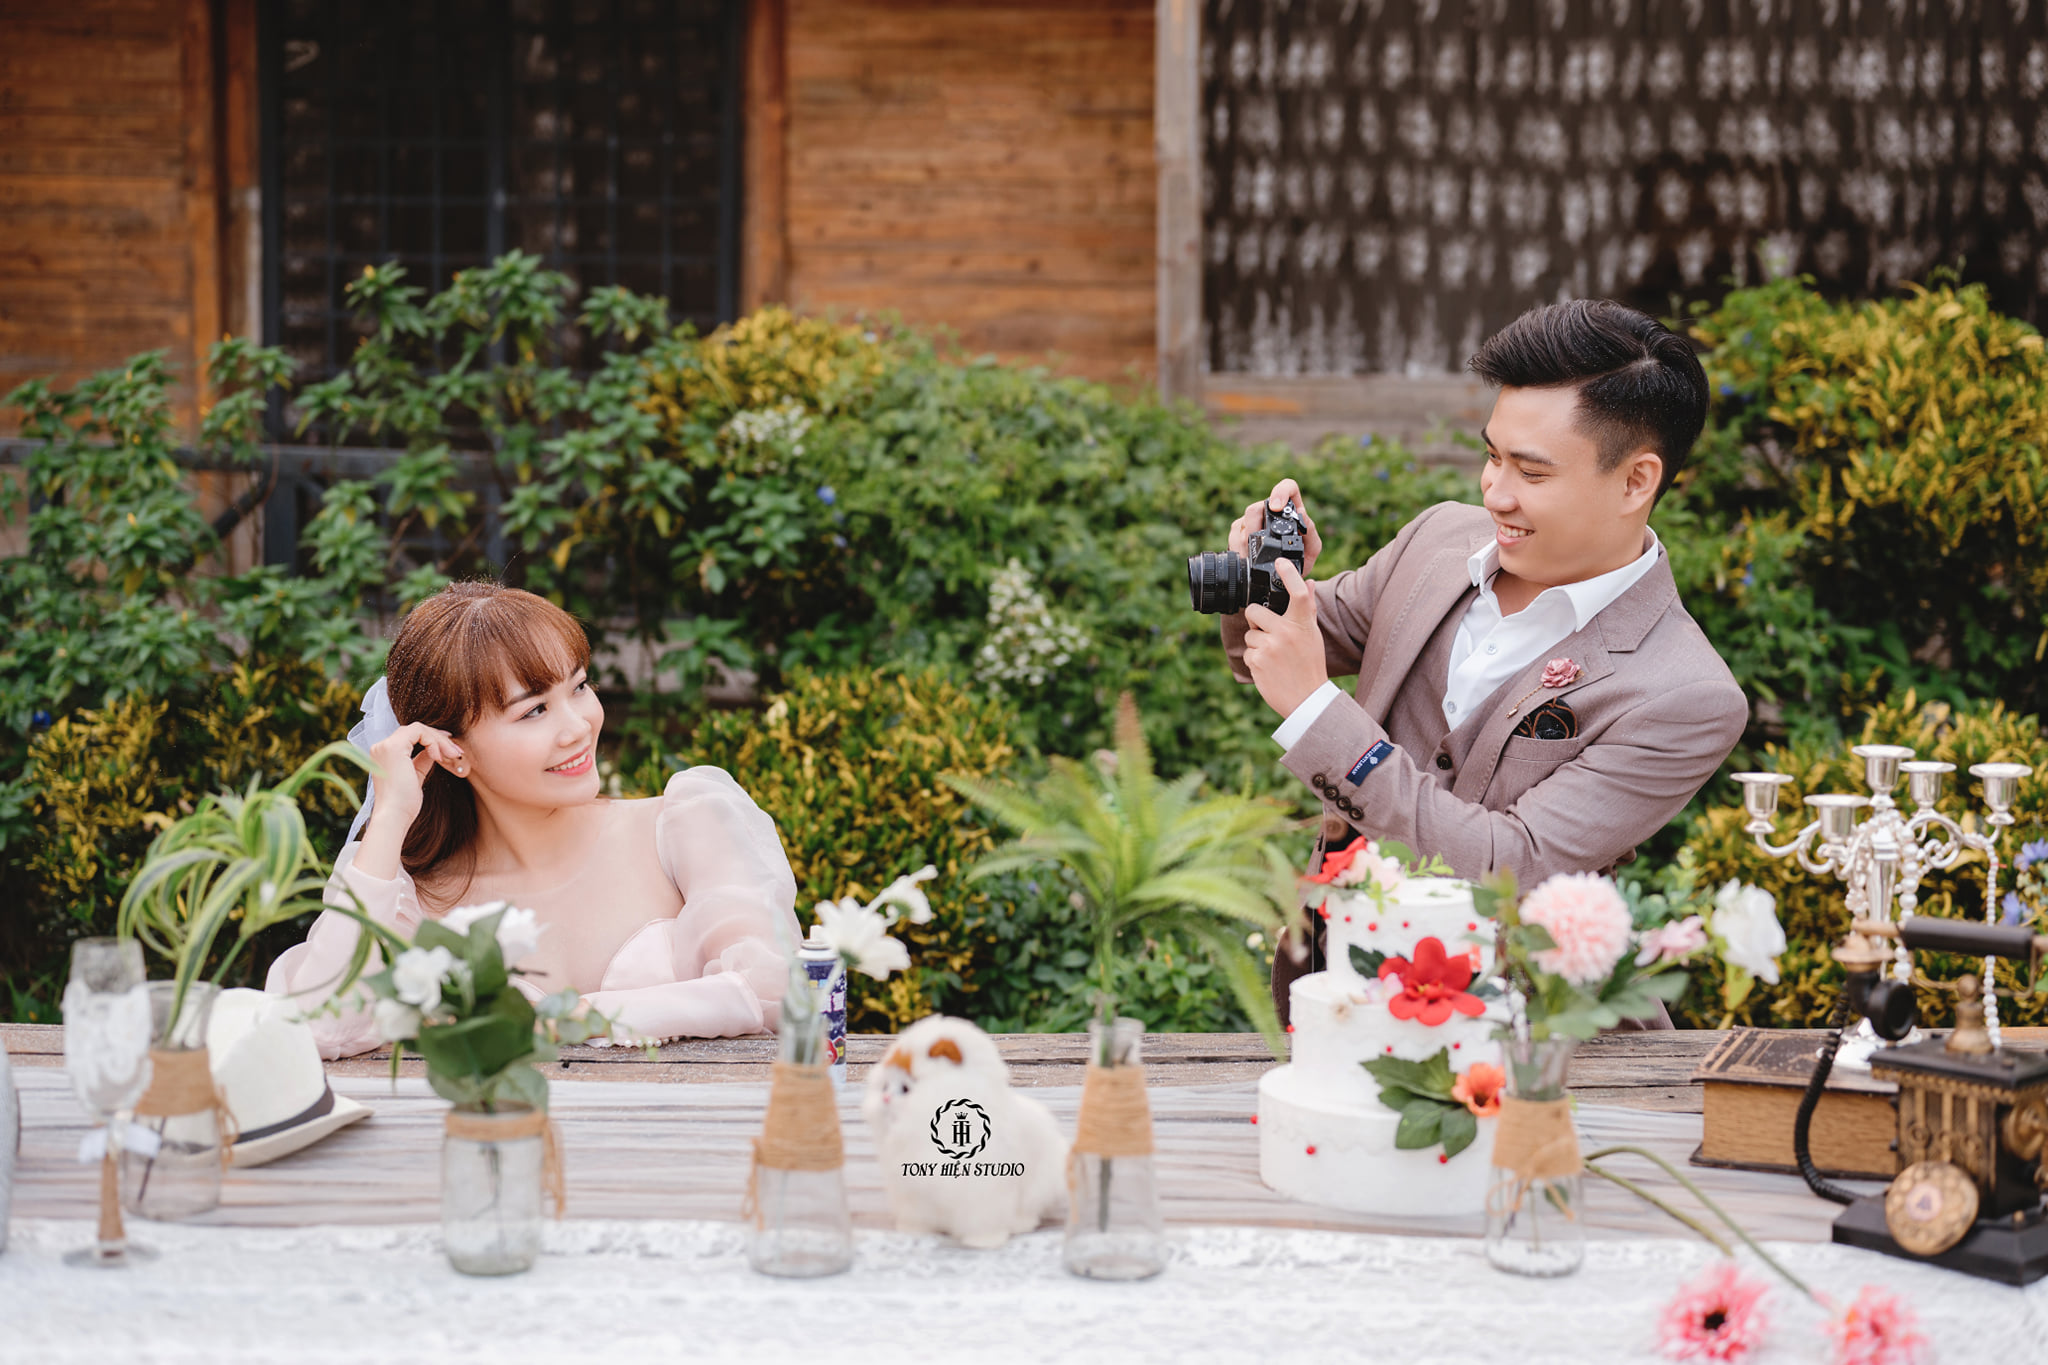 Chụp ảnh cưới tại studio tuyệt đẹp của Thanh Miện, Hải Dương để tạo ra những bộ ảnh cưới đẹp nhất. Được trang trí với hoa cùng các phụ kiện độc đáo, không gian này sẽ mang lại cho đôi uyên ương một trải nghiệm chụp ảnh cưới tuyệt vời.